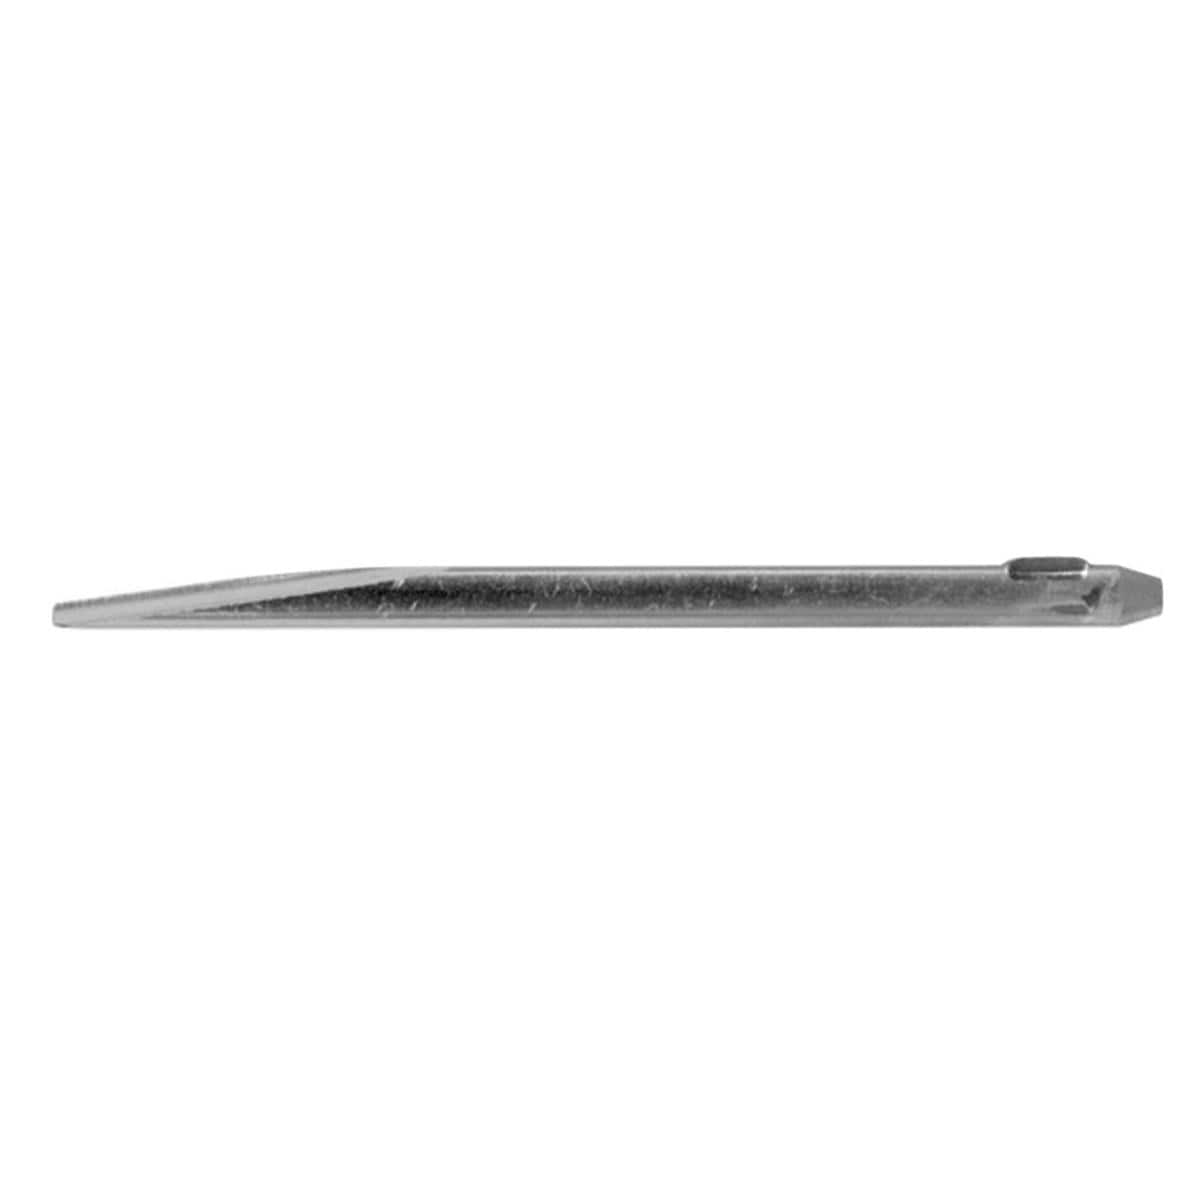 Periotome Blade 2.5mm Straight Semi-Rigid 4cm